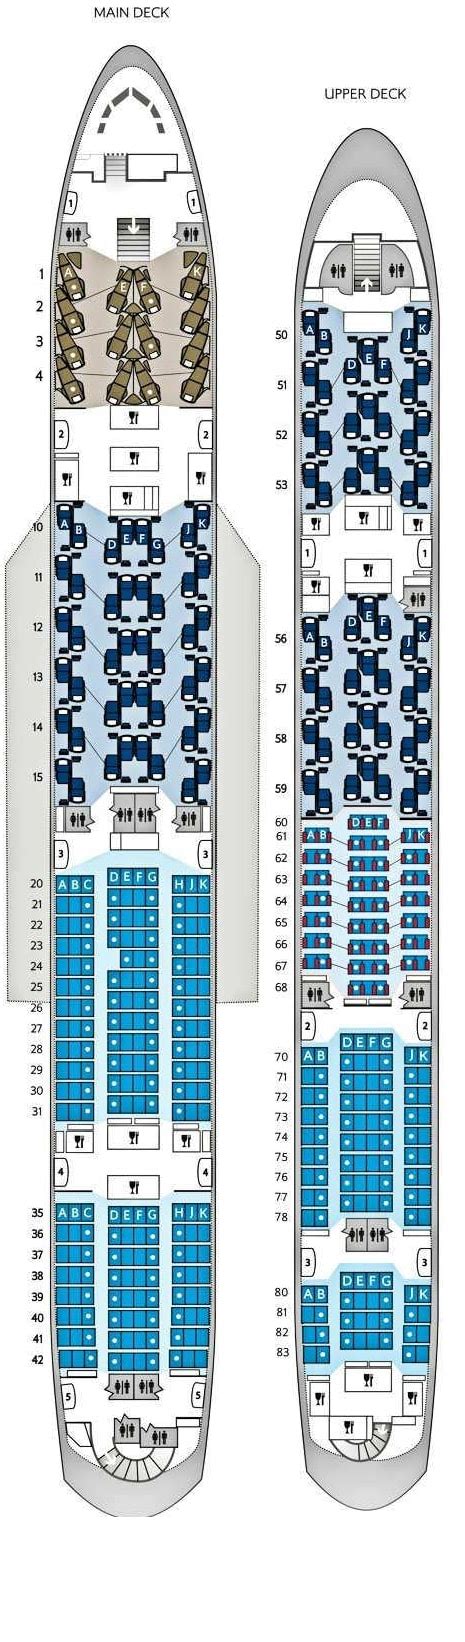 Qatar Airways Airbus A380 Seating Plan Image To U